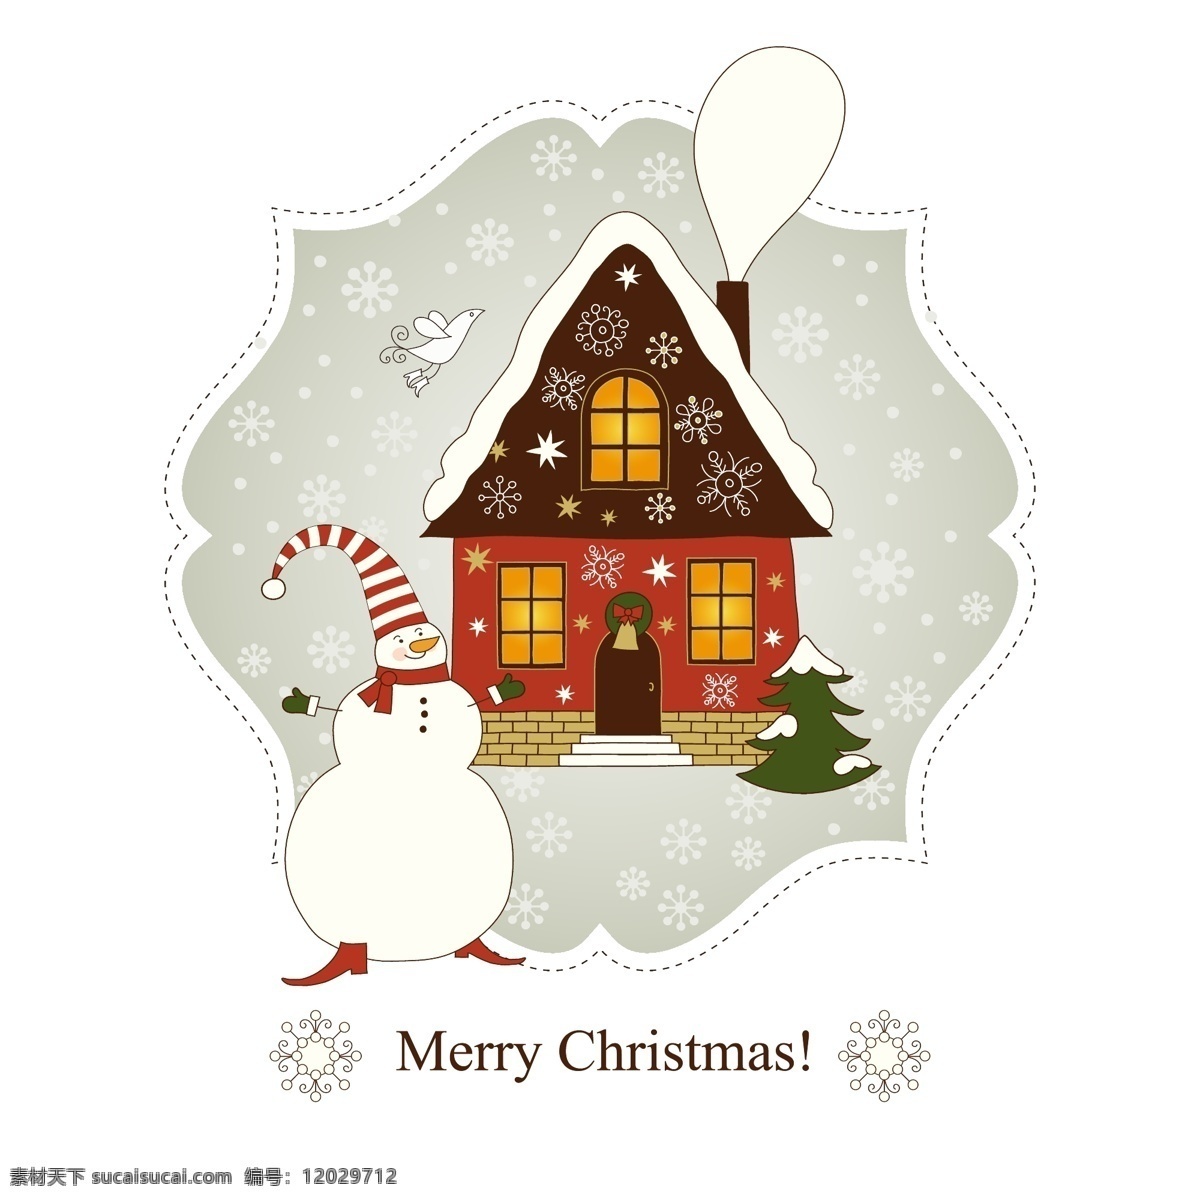 图片免费下载 白色鸽子 矢量雪花 矢量素材 模板下载 圣诞节元素 圣诞节 雪人 红房子 雪花 鸽子 节日素材 矢量